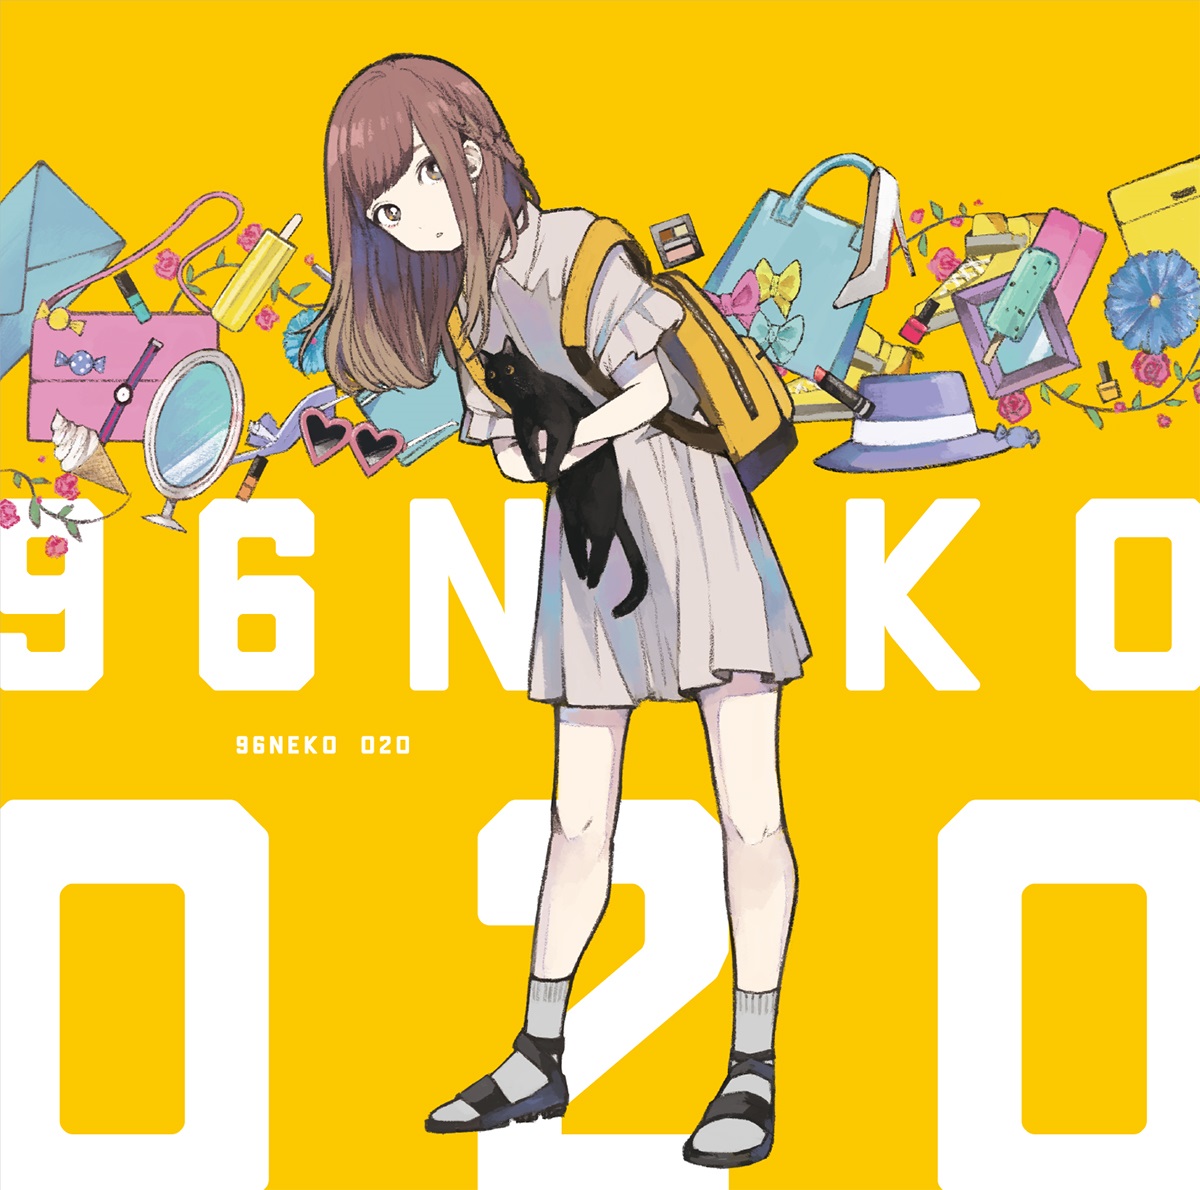 96neko O2O cover artwork